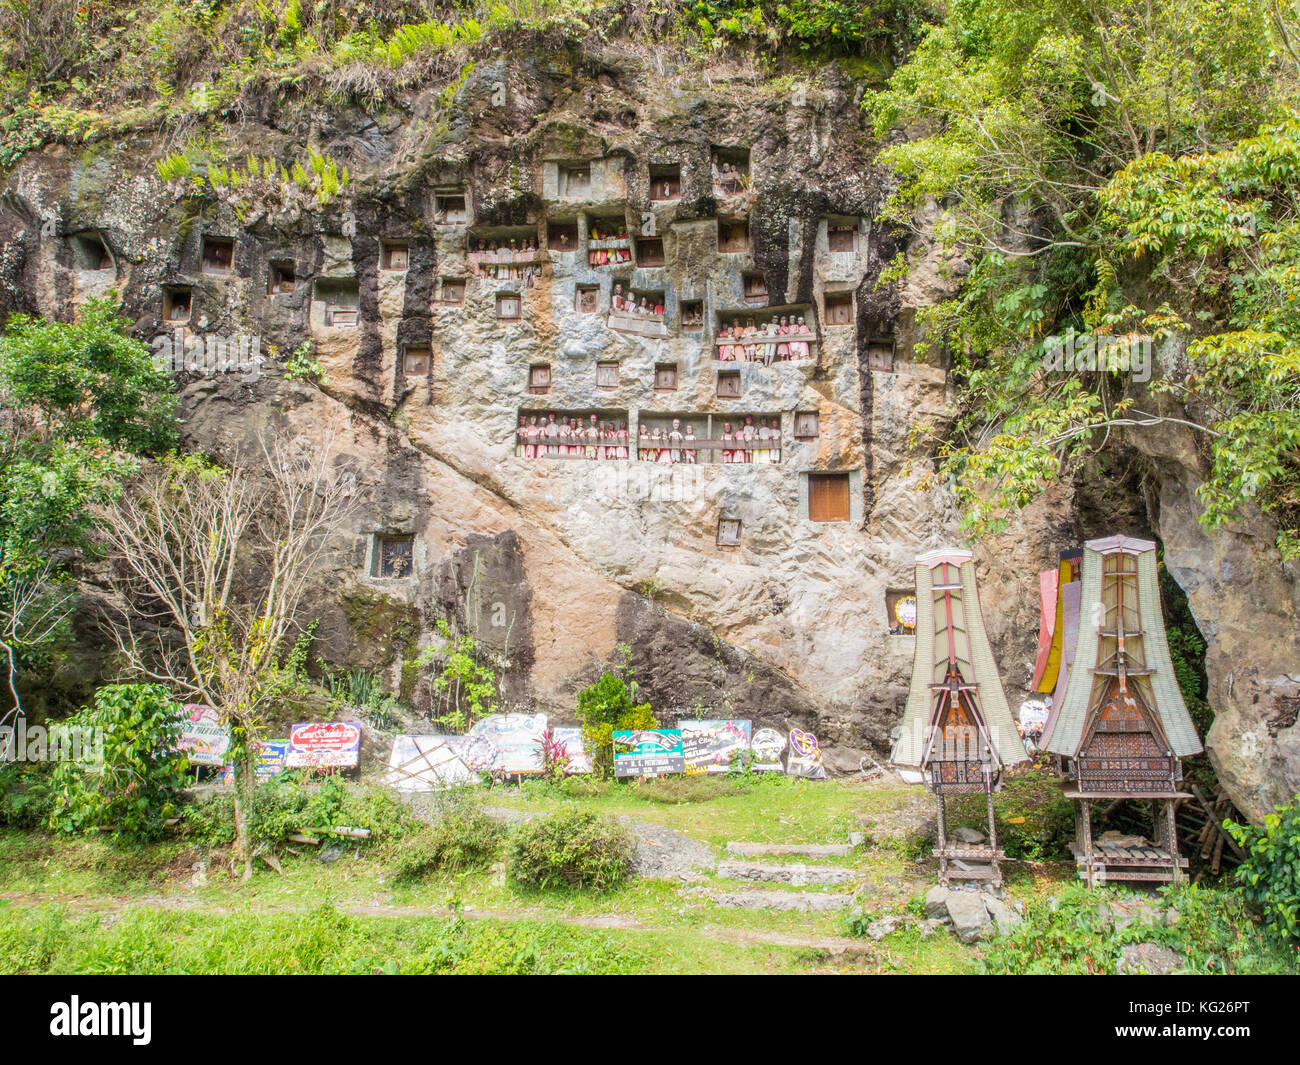 An dieser Grabklippe sind unter den Krypten Tana Toraja, Sulawesi, Indonesien Beileidszeichen von vergangenen Beerdigungen und Sargträgern hinterlassen Stockfoto